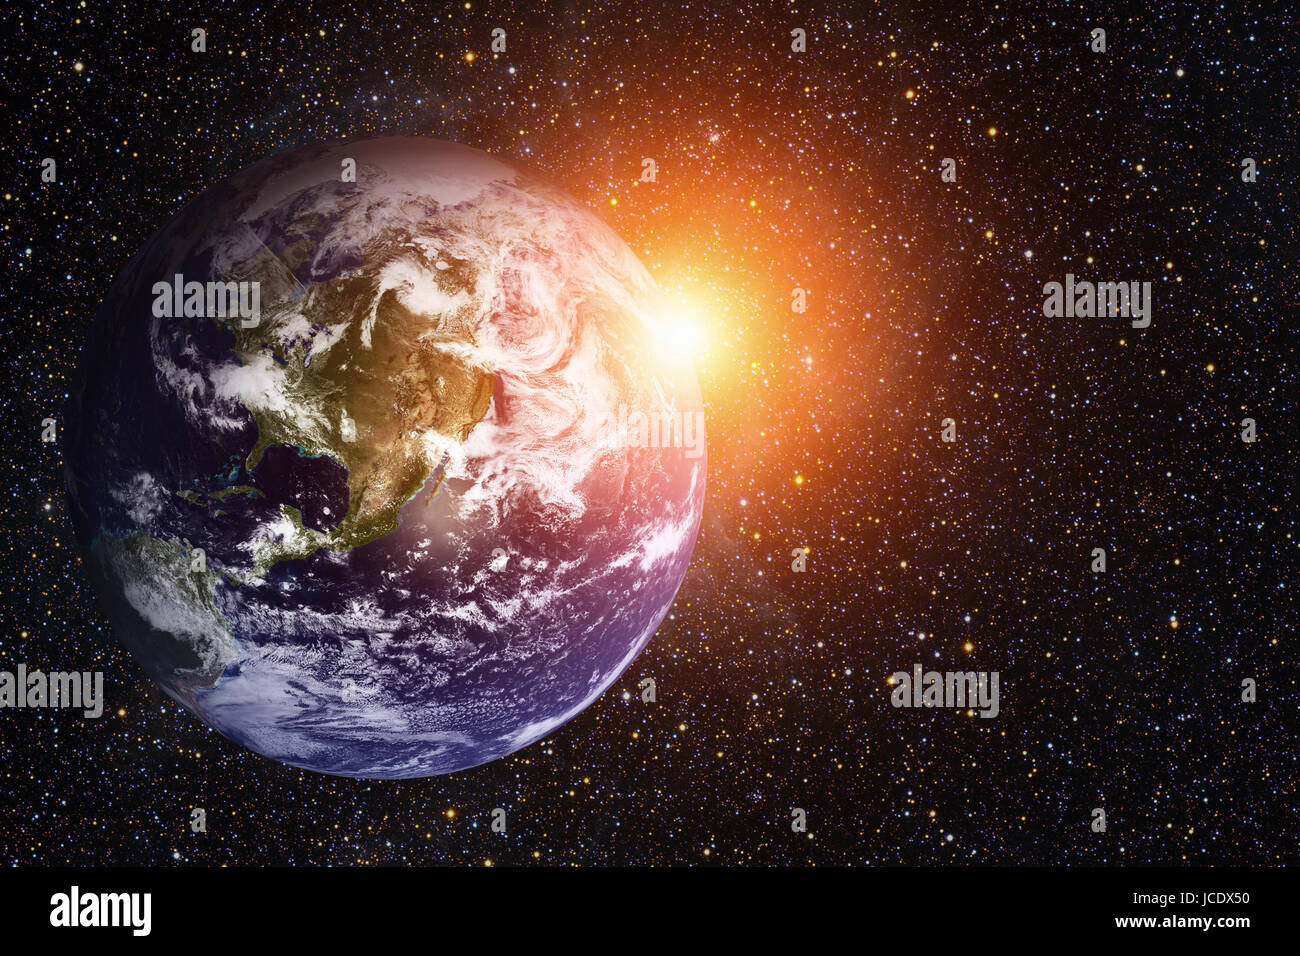 Sistema solare - il pianeta Terra. La terra è il più grande e il più denso dei pianeti interni. Ha un satellite naturale, la luna. Gli elementi di questa immagine fur Foto Stock